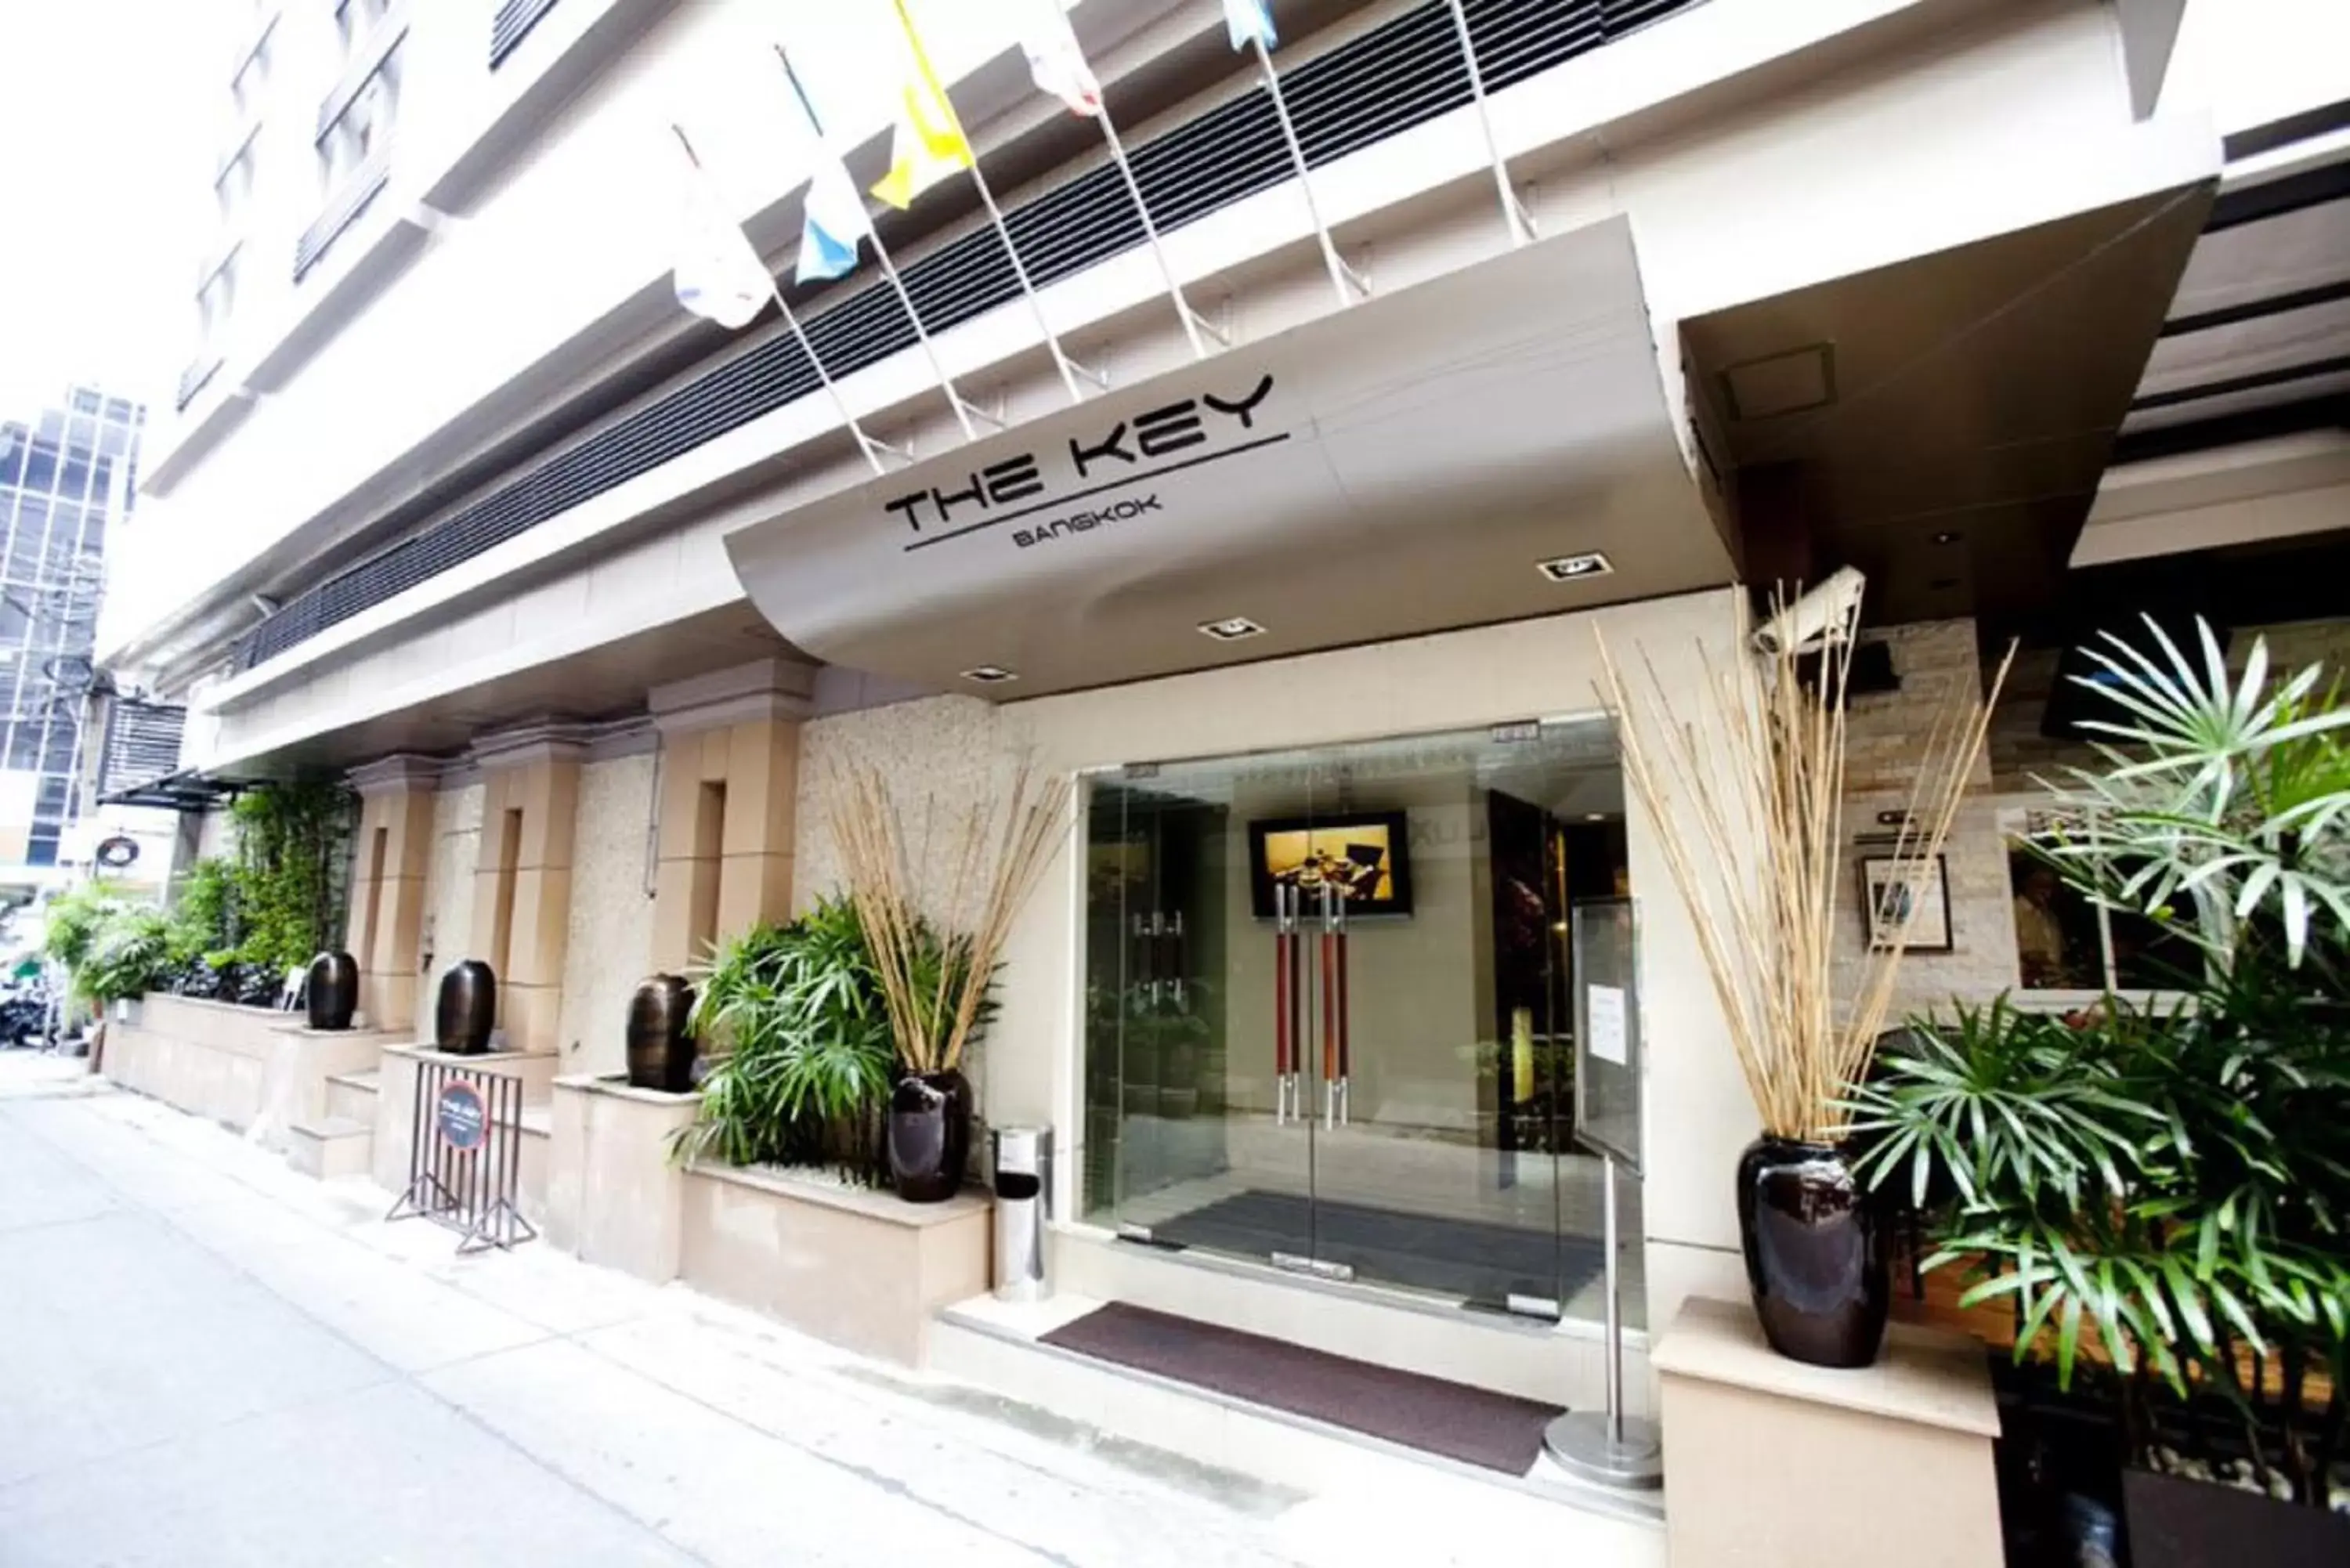 Facade/entrance in The Key Bangkok Hotel